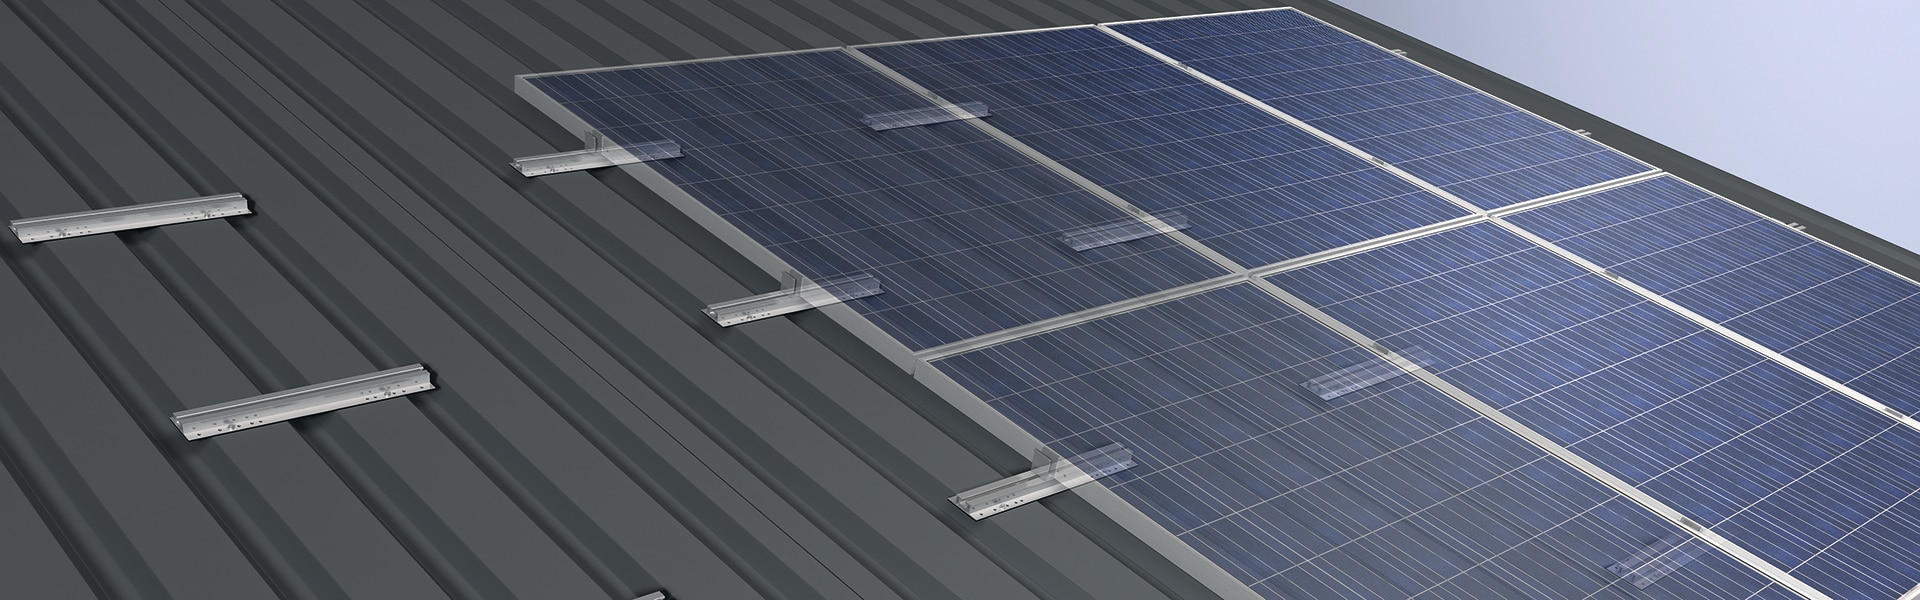 MSE 210 di Nuove Energie è il sistema di fissaggio di pannelli fotovoltaici su lamiera grecata